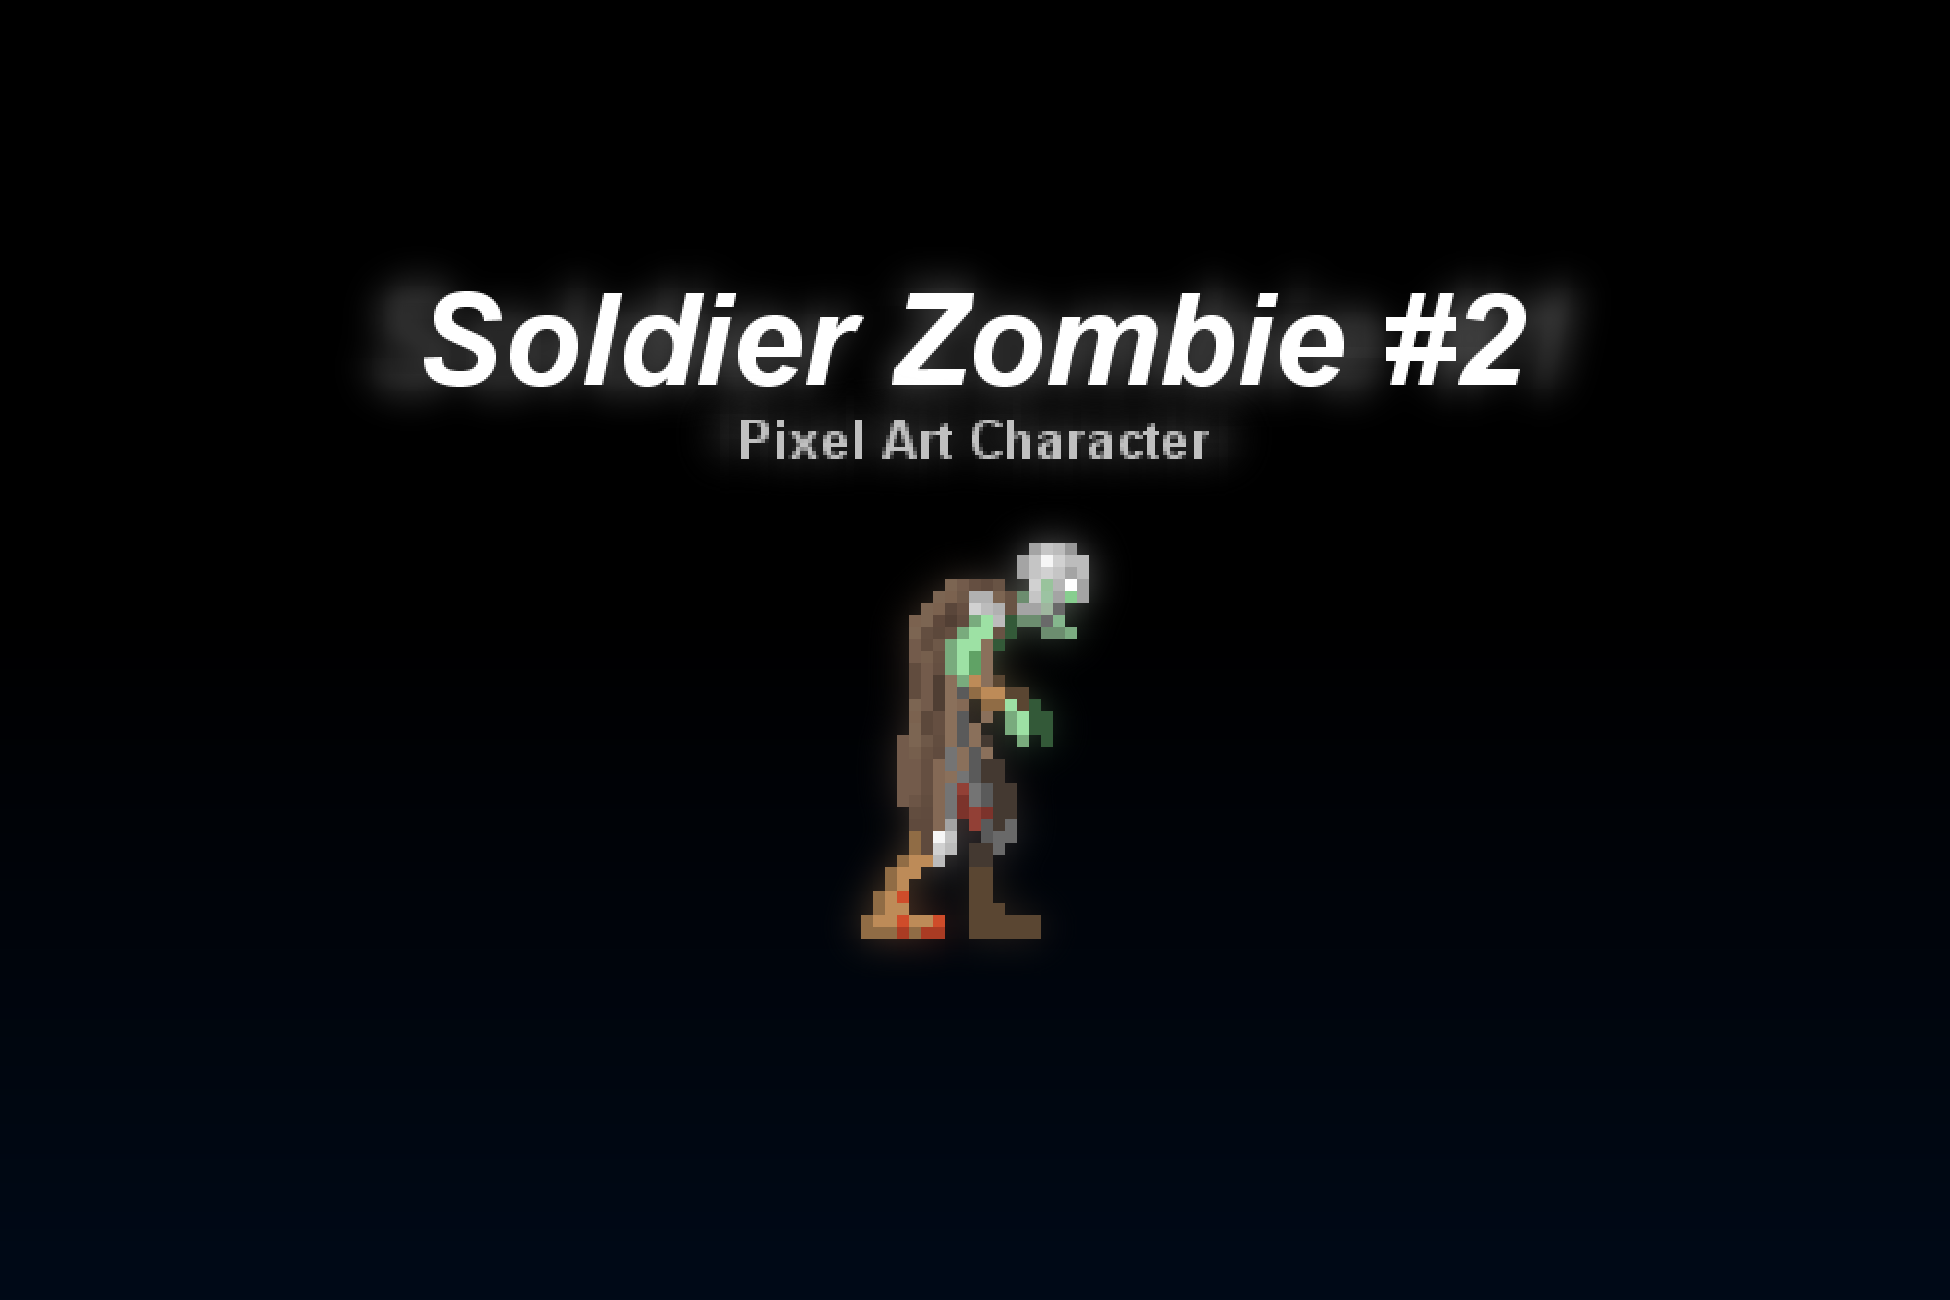 Soldier Zombie #2 - Pixel Art Character